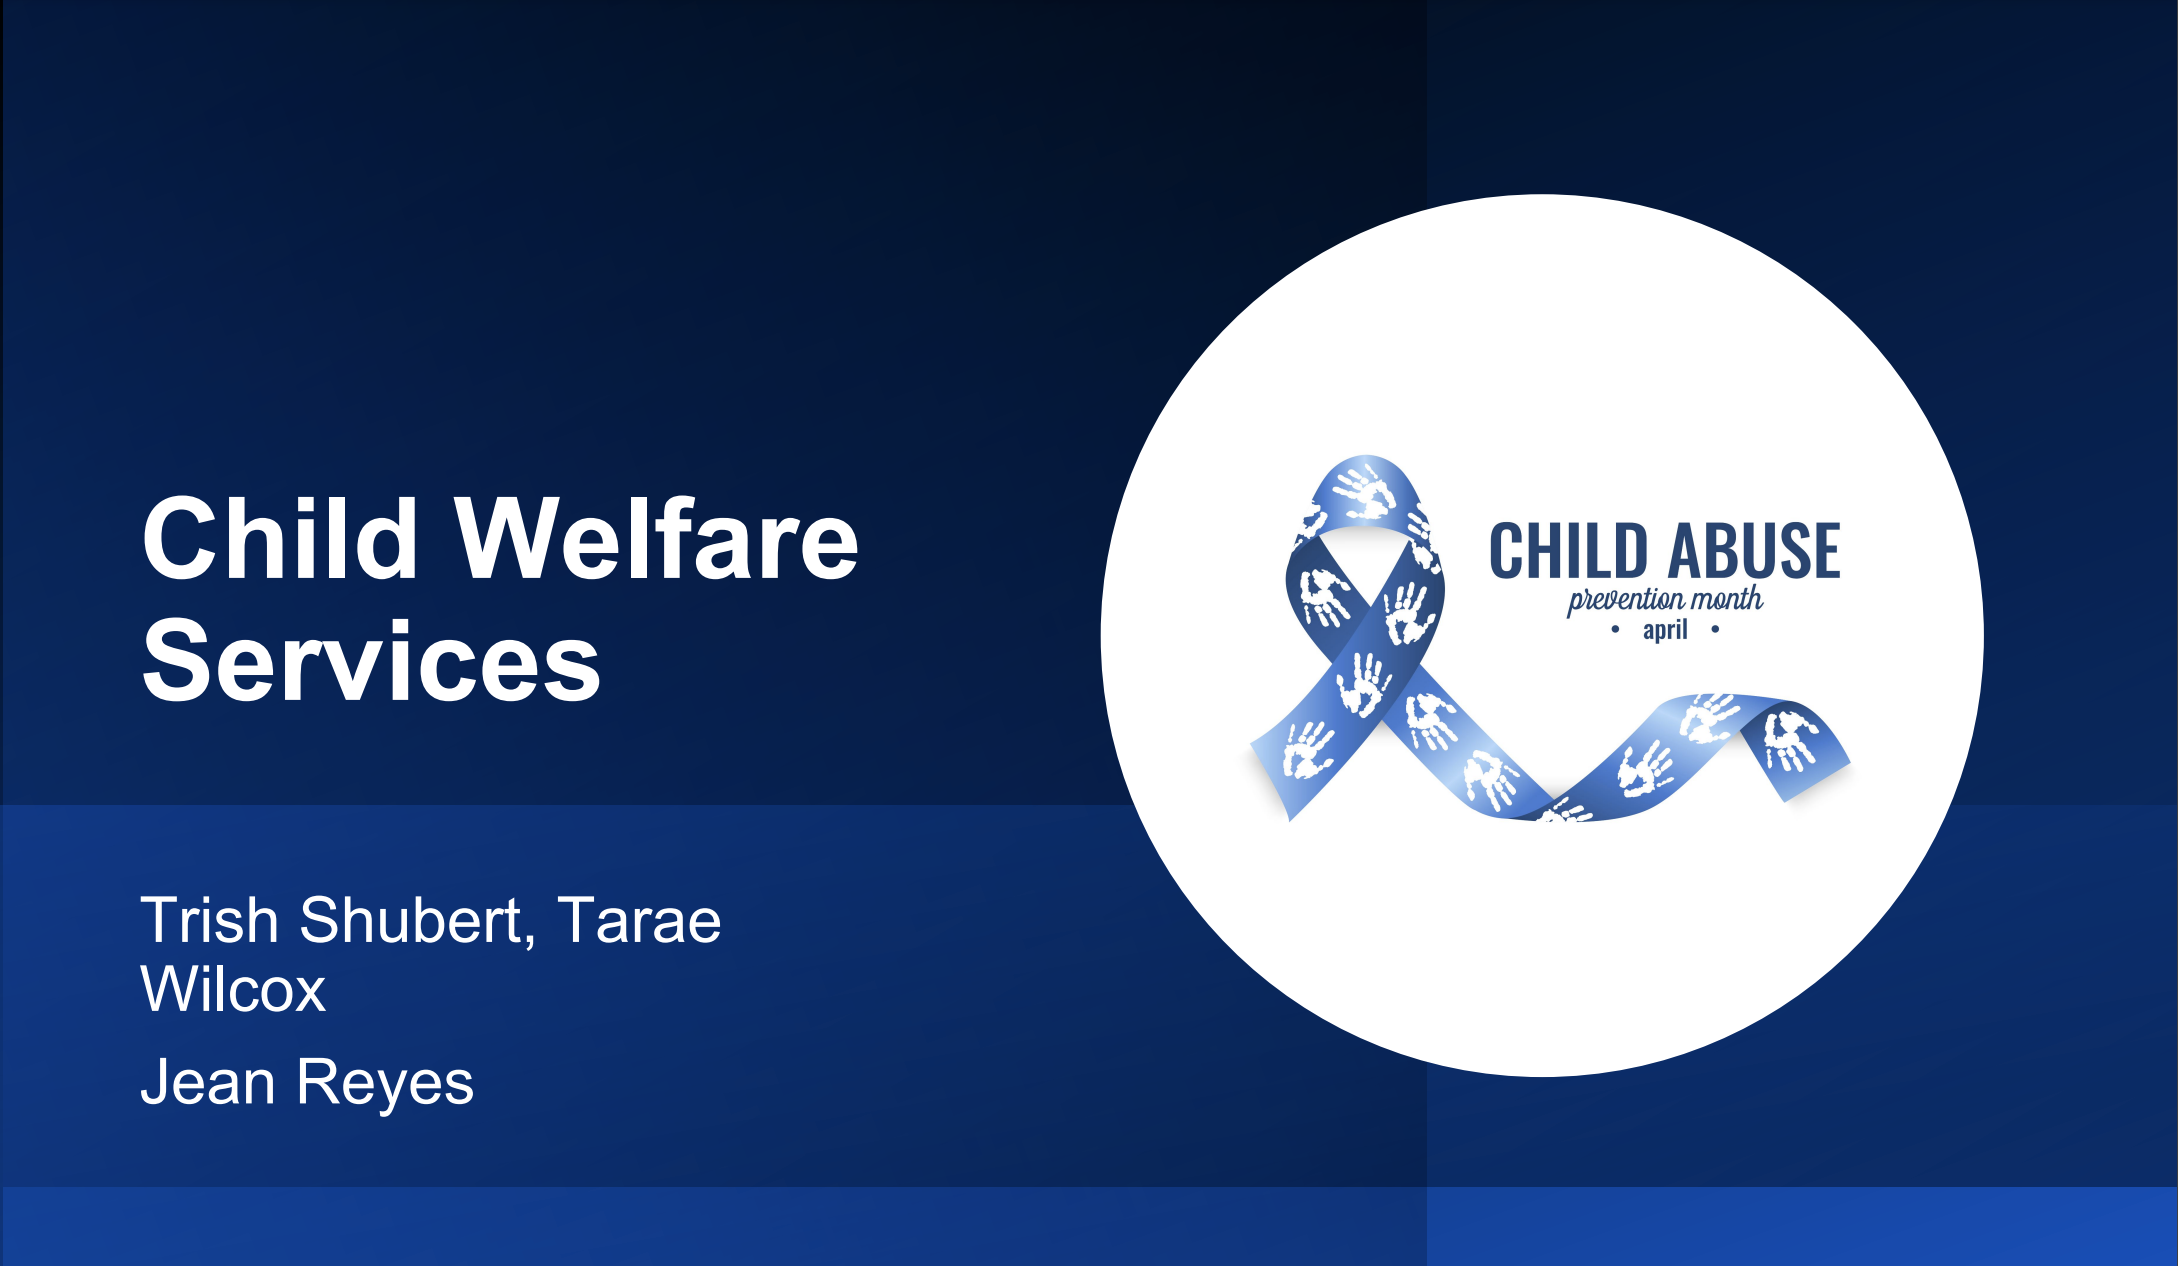 Child Welfare Services